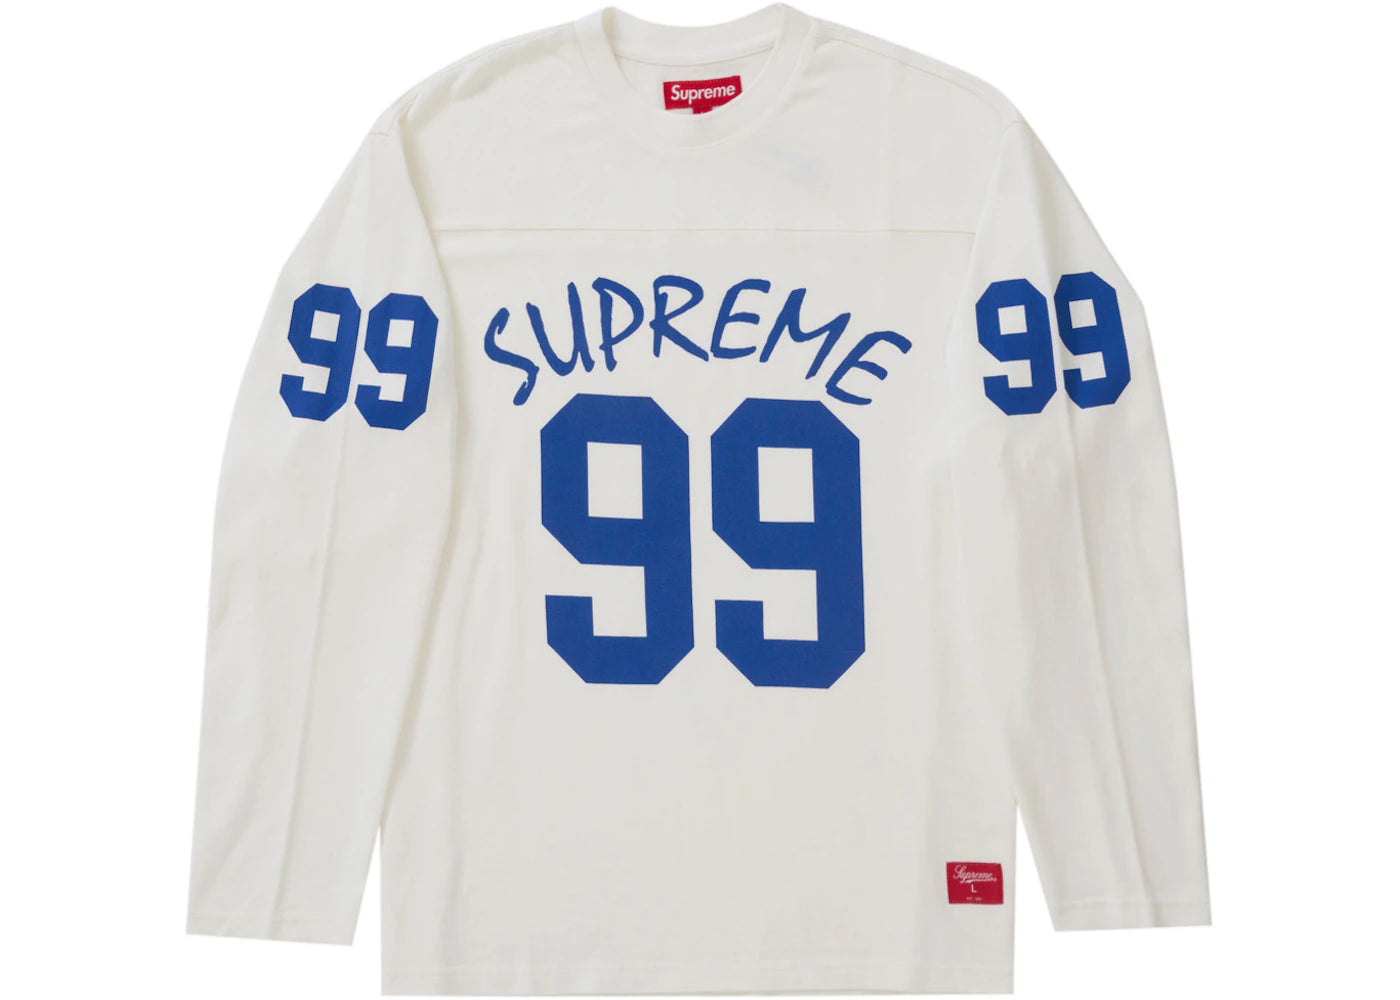 Supreme 99 L/S Football Top White